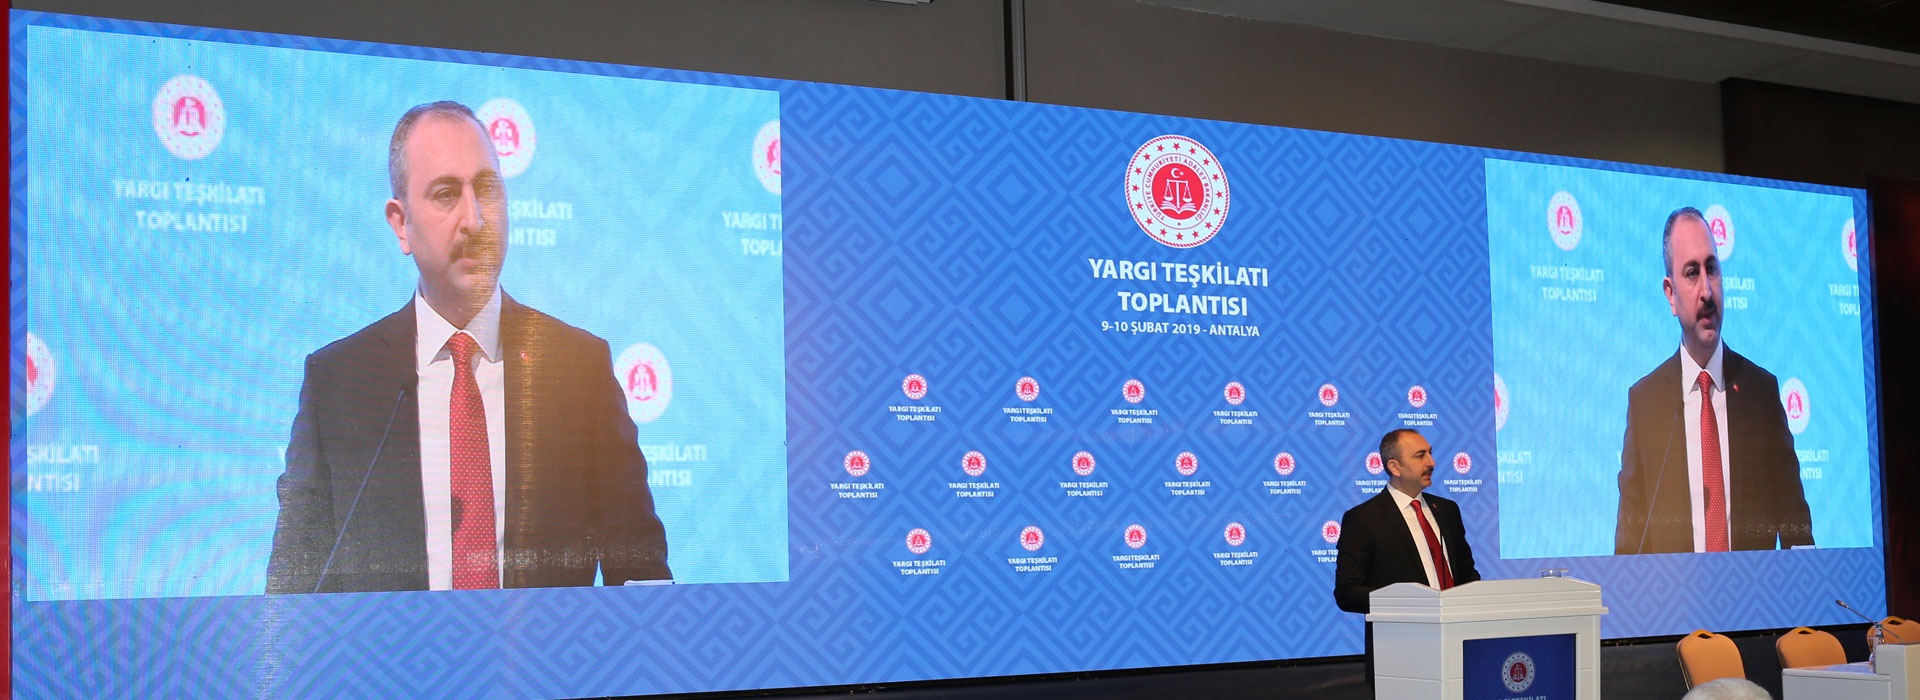 ATGV Antalya Kundu tesislerinde Yargı Teşkilatı Toplantısı gerçekleştirilmiştir.